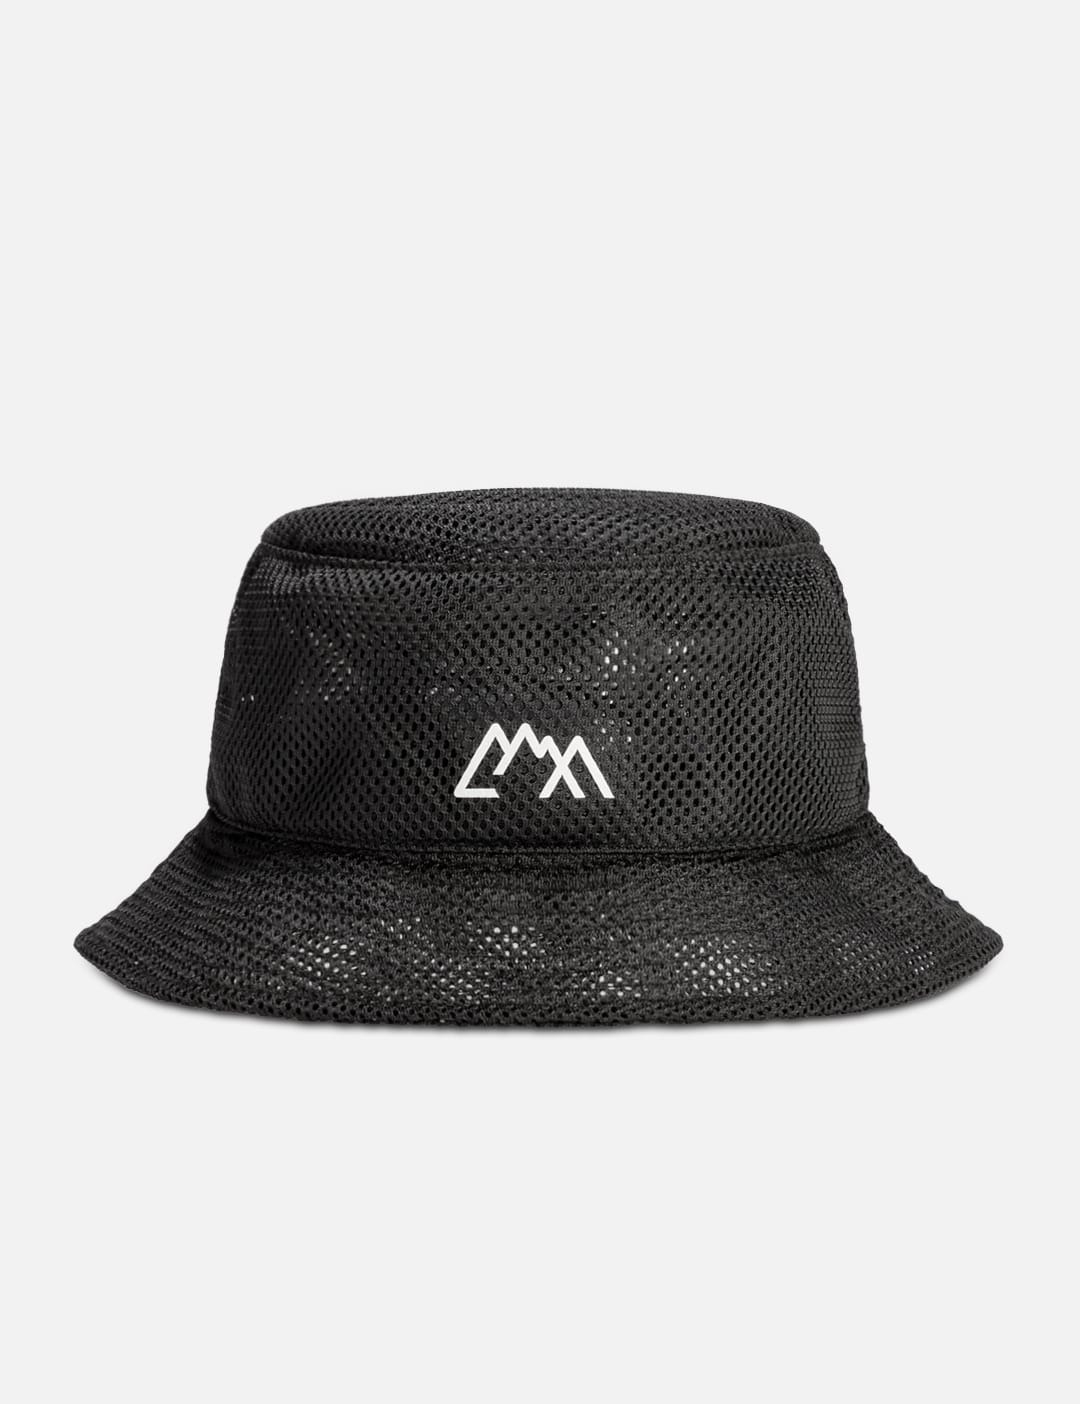 Comfy Outdoor Garment Hikers Hat